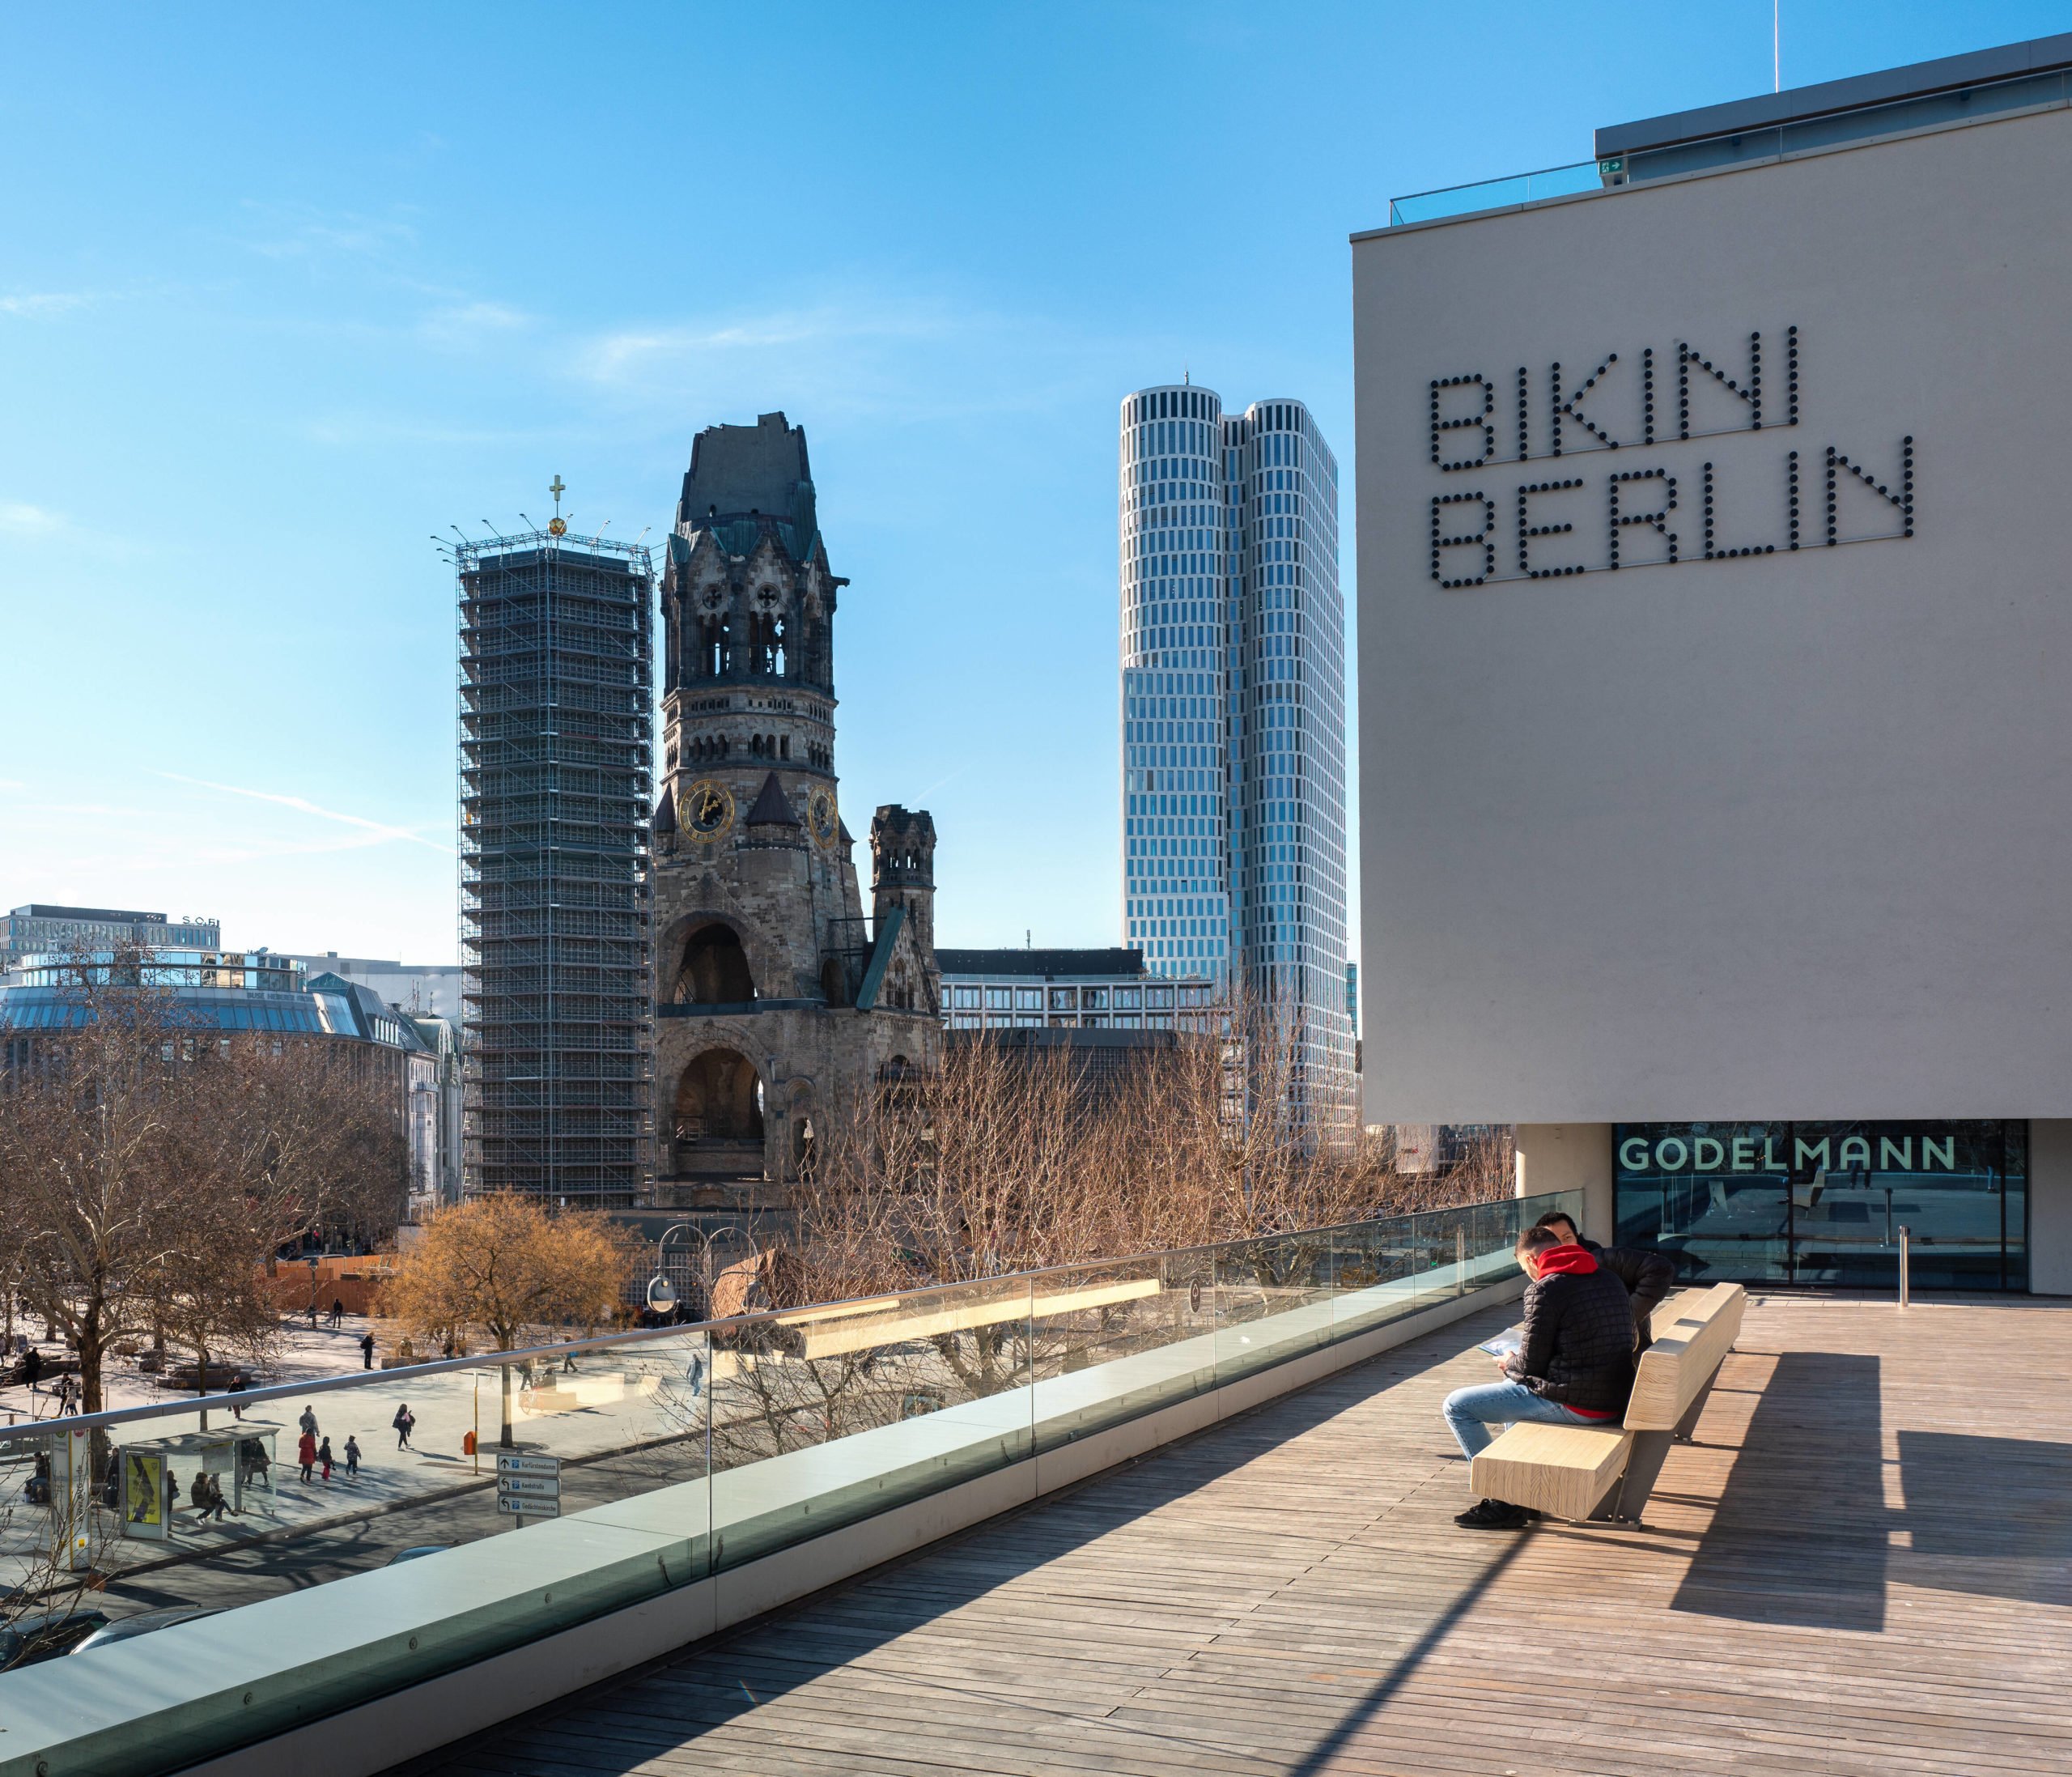 begehbare Dächer in Berlin Die Dachterrasse des Bikini Berlin ist der grünen Hochbahntrasse, Highline Park, in New York nachempfunden.